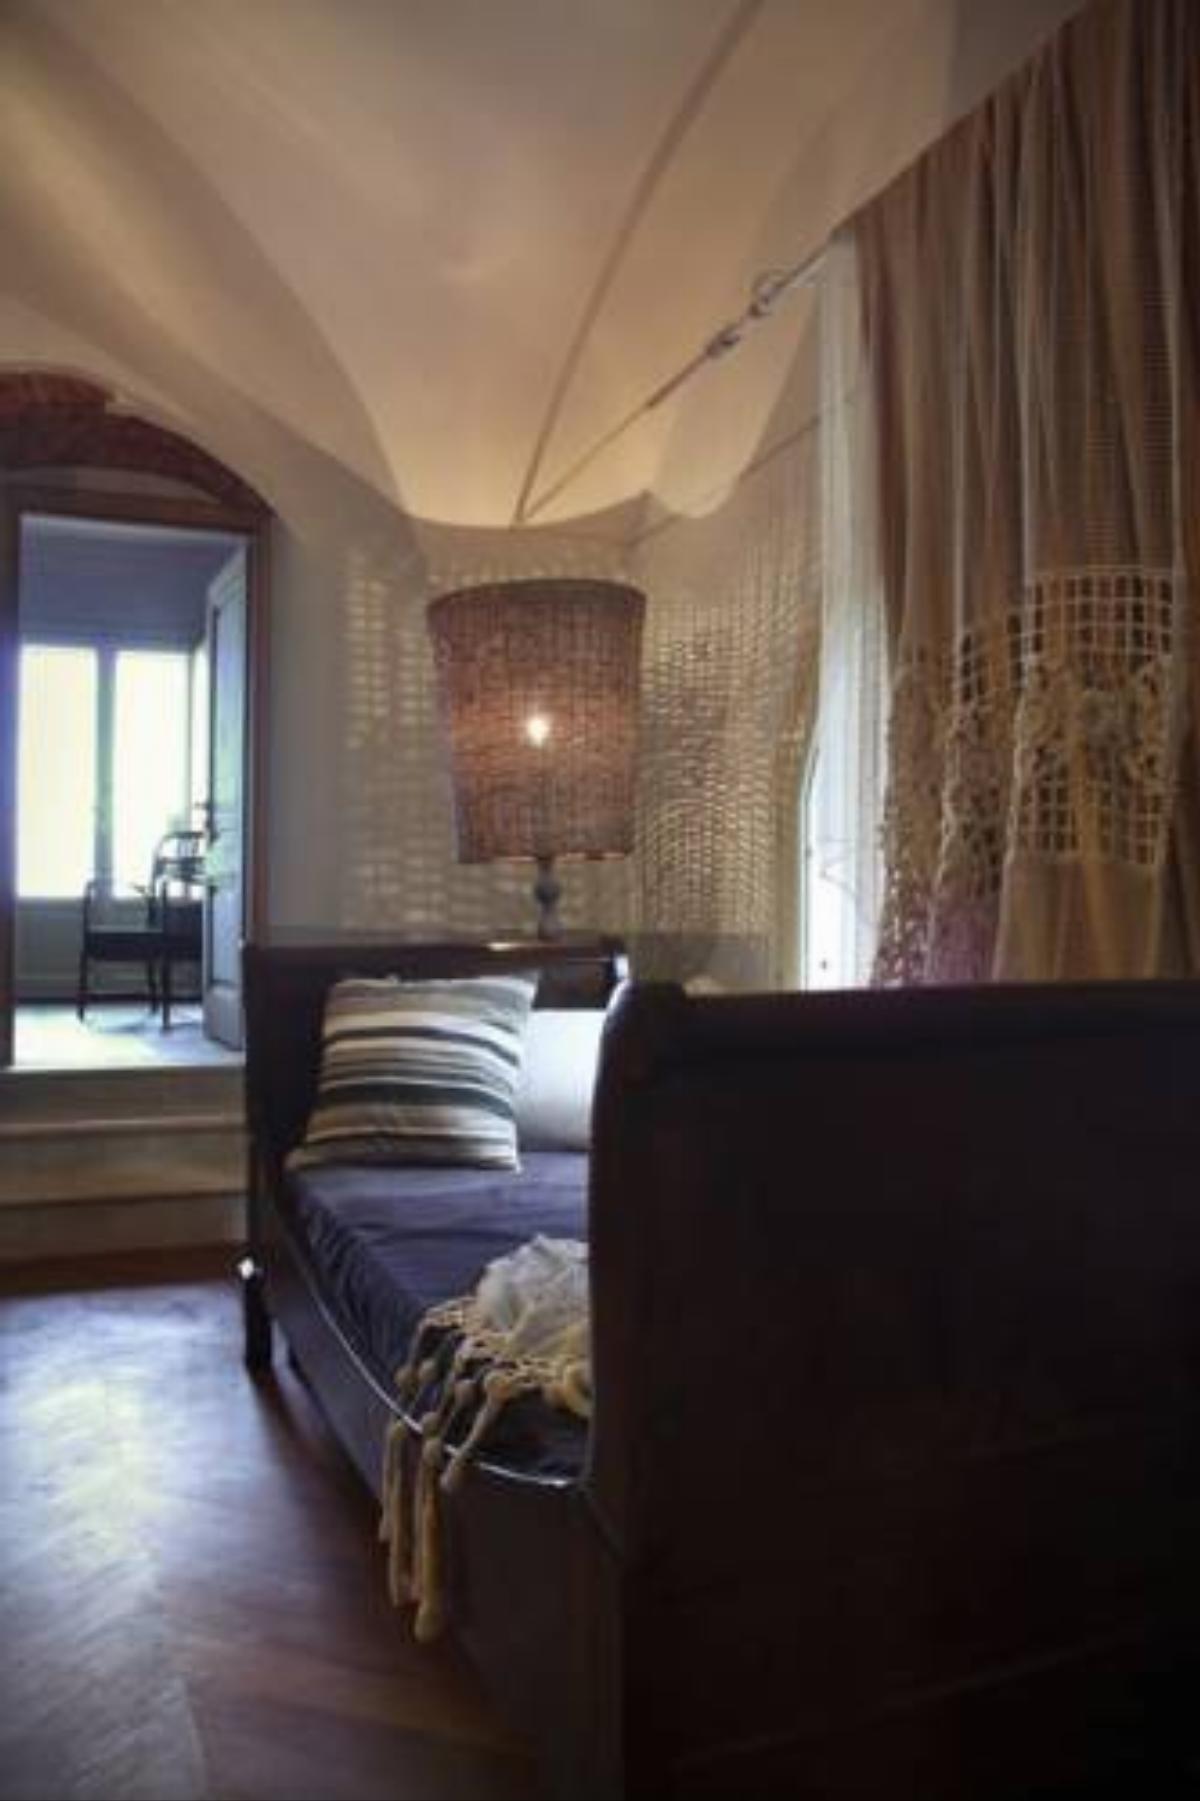 Lavanda in Fiore Hotel Albenga Italy